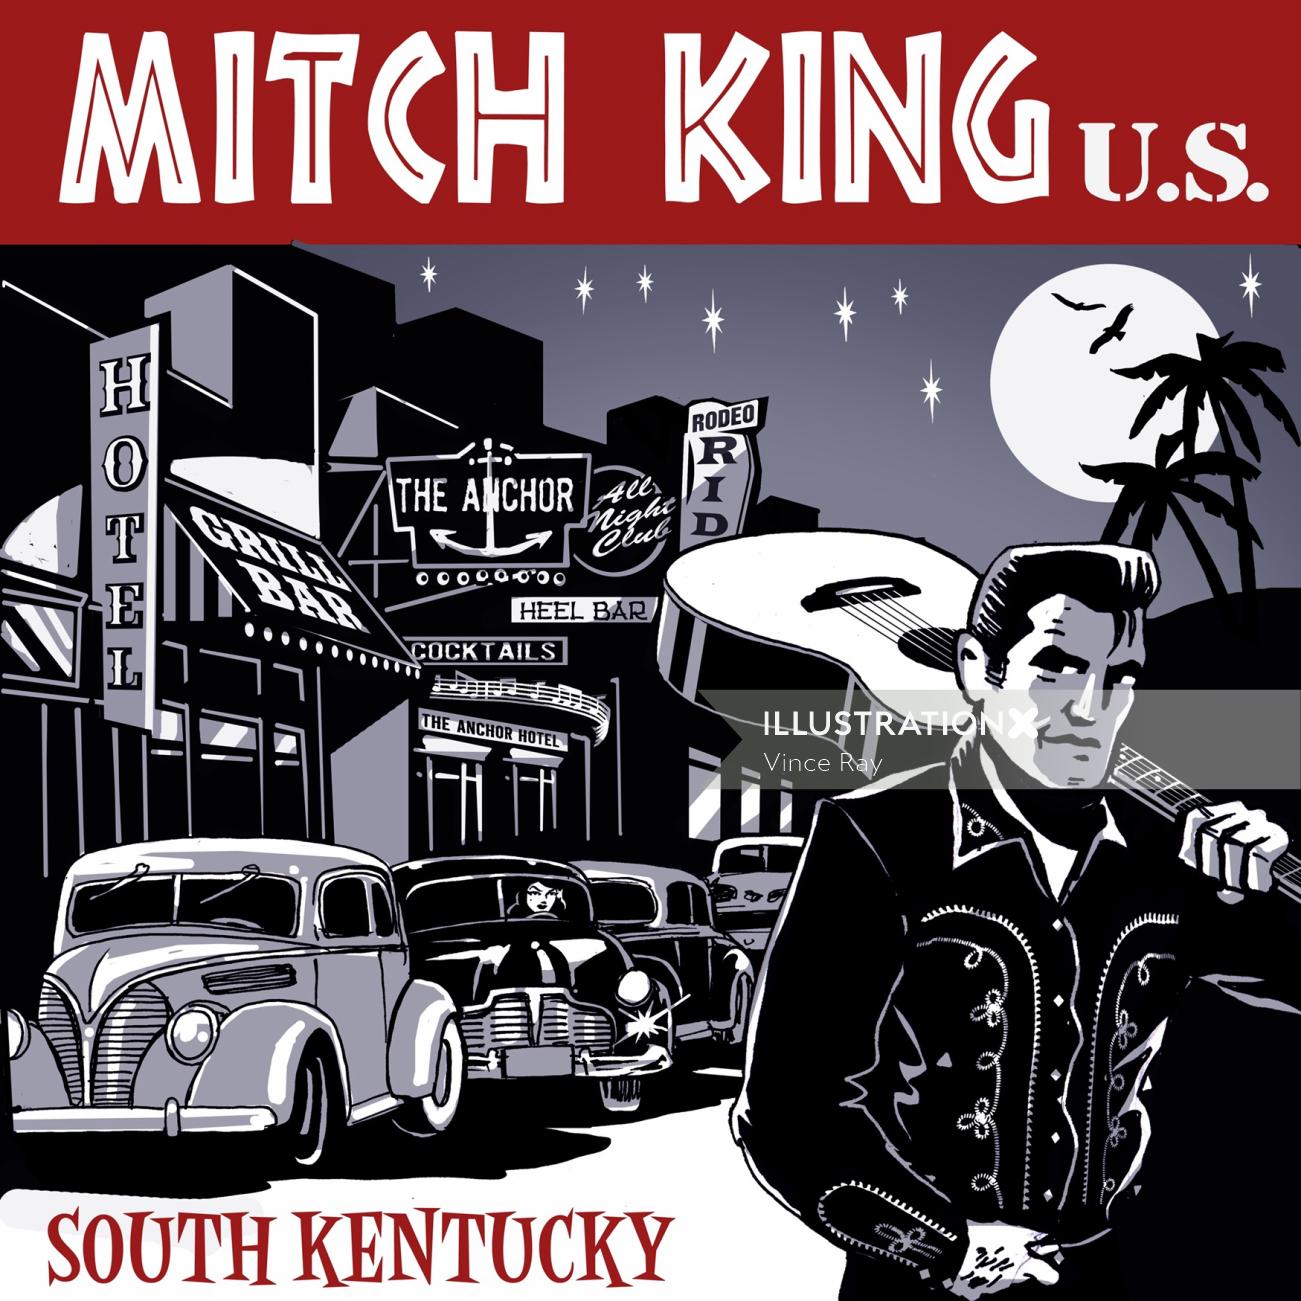 Mitch King nos ilustração retro